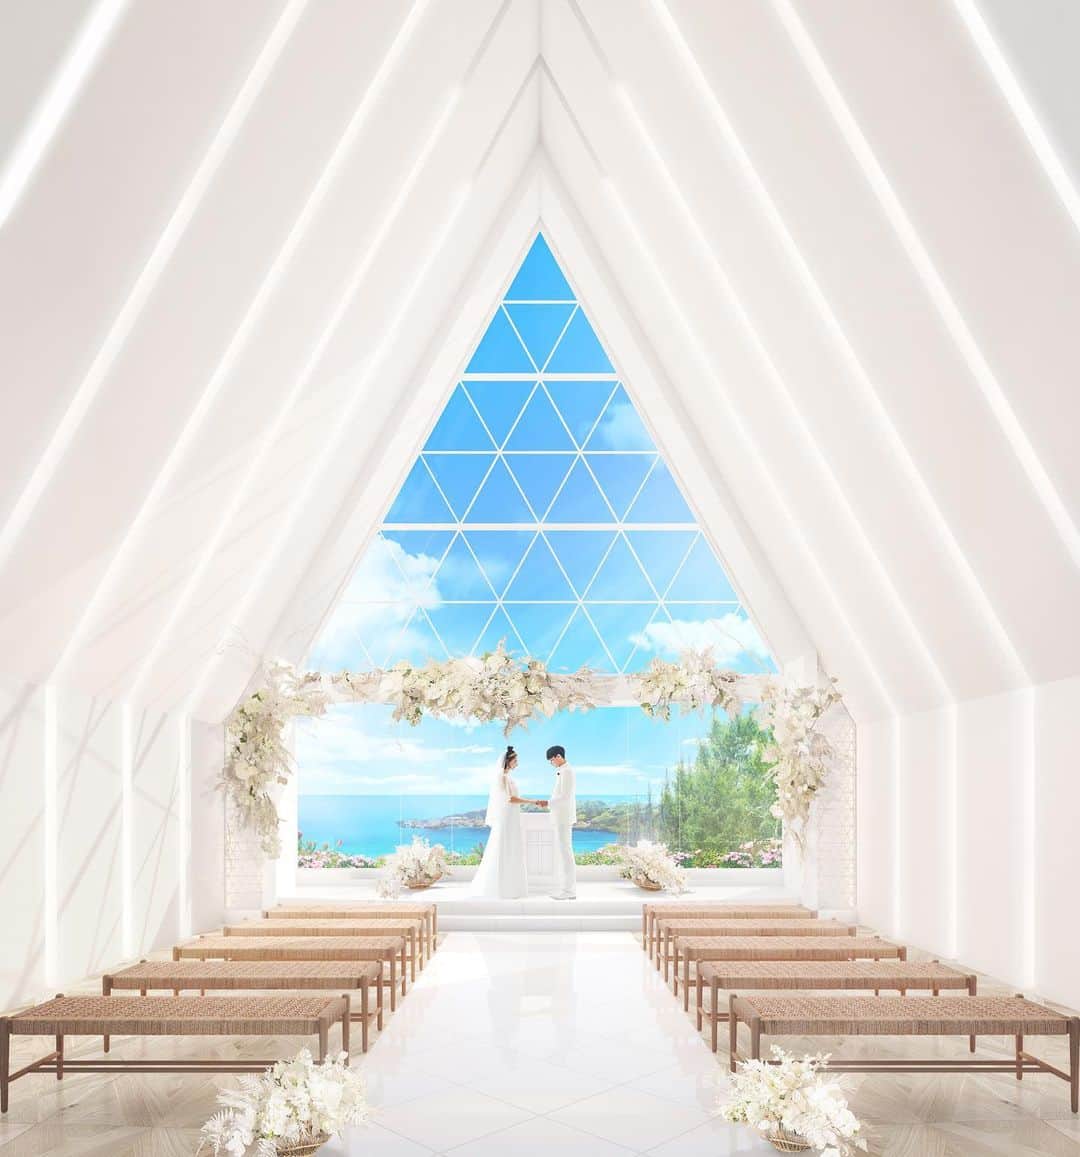 ARLUIS WEDDINGのインスタグラム：「#結婚式を楽しもう  . TOPICS 3  . 2021年7月　沖縄宮古島「葵の教会」がリニューアルします！ . 青く澄んだ海と純白の空間とのコントラストが美しい葵の教会が、フラワーアーティストNAMIKO KAJITANIのディレクションにより、チャペル装花をアップデート。 大自然に囲まれた宮古島でのゆったりしたウエディングを選ぶカップルのために、宮古リゾートテイストに生まれ変わった葵の教会で、おふたりらしい誓いのセレモニーを叶えて。 . リニューアルを記念して、インスタLIVEの開催が決定！！ デザイナーNAMIKO KAJITANIも出演します。 @nami003ztt  . ーーーーーーーーーーーーー インスタLIVEスケジュール 1月21日(木）20:00START ーーーーーーーーーーーーー . 是非、お楽しみに！ . . ▪️#アールイズウエディング ▪️Area：#沖縄　#宮古島  ▪️Chapel：#葵の教会 . . アールイズウエディングでは、 結婚式当日はもちろん、 おふたりのリゾートステイをご提案。 風までも、思い出になるリゾートウエディングを。 . . . #アールイズウエディング のハッシュタグをつけて、 ﻿ 投稿・発信してくださいね✈﻿ 公式IGでリグラムさせていただきます✨.﻿ >>> @arluiswedding −﻿﻿ #アールイズ花嫁 #アールイズウェディング #フォトジェニック #インスタ映え #wedding #resortwedding #beachwedding #weddingphoto #ウェディングフォト #沖縄挙式 #沖縄リゾートウェディング #沖縄ウェディング #okinawajapan #挙式レポ #ロケーションフォト #リゾートウエディング #リゾートフォト #リゾート挙式 #okinawatrip #okinawa #miyakojima  #arluiswedding #okinawawedding #okinawaweddingphoto」